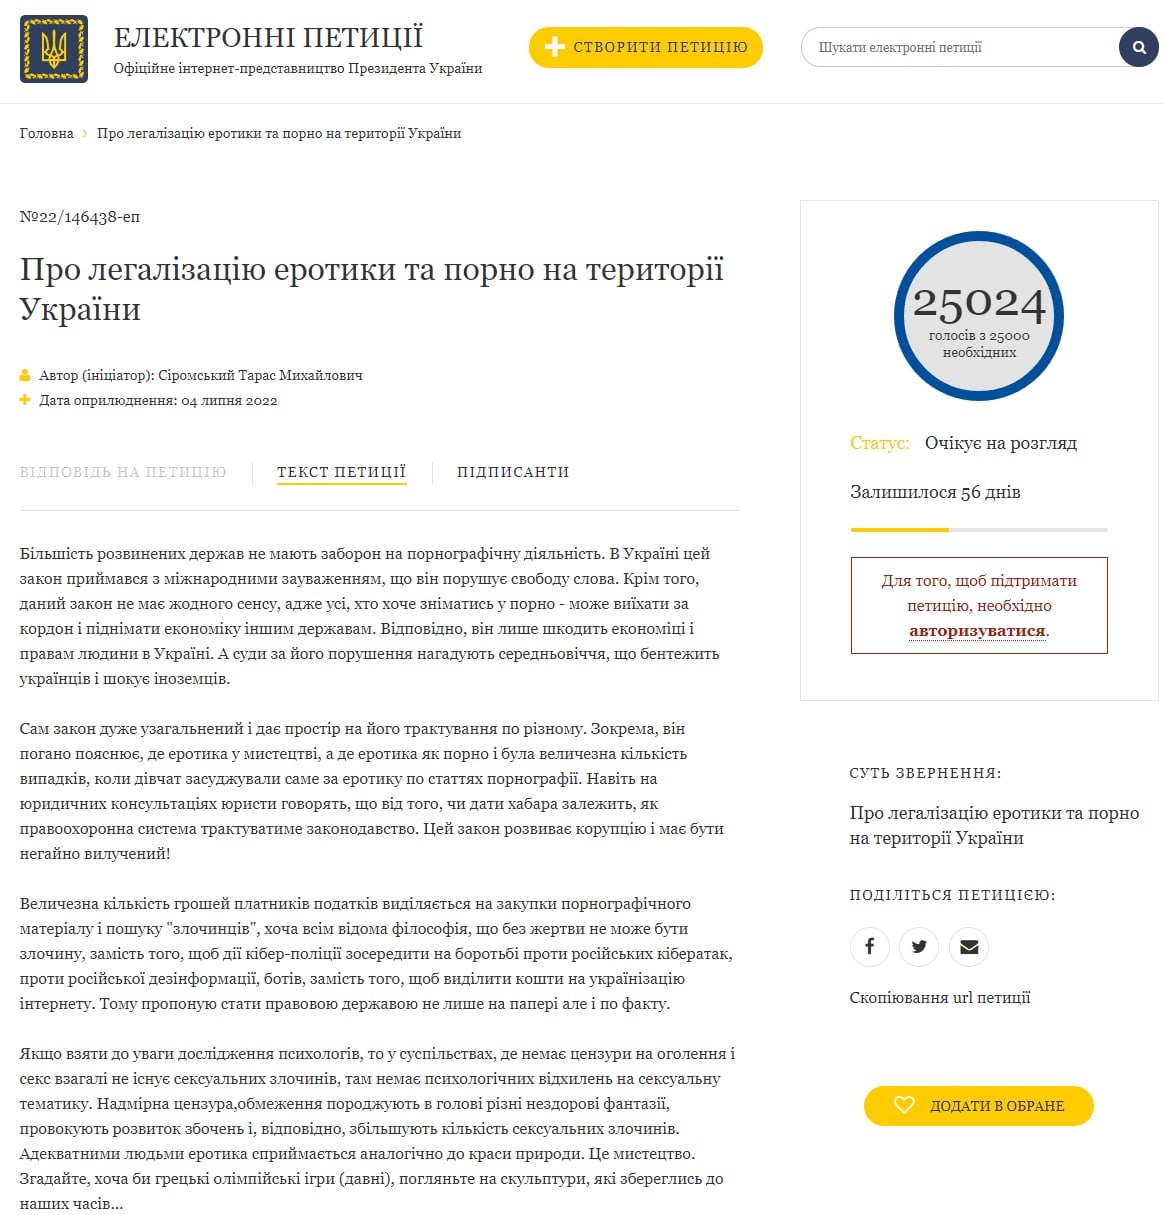 Петиция о легализации порно на сайте Президента Украины